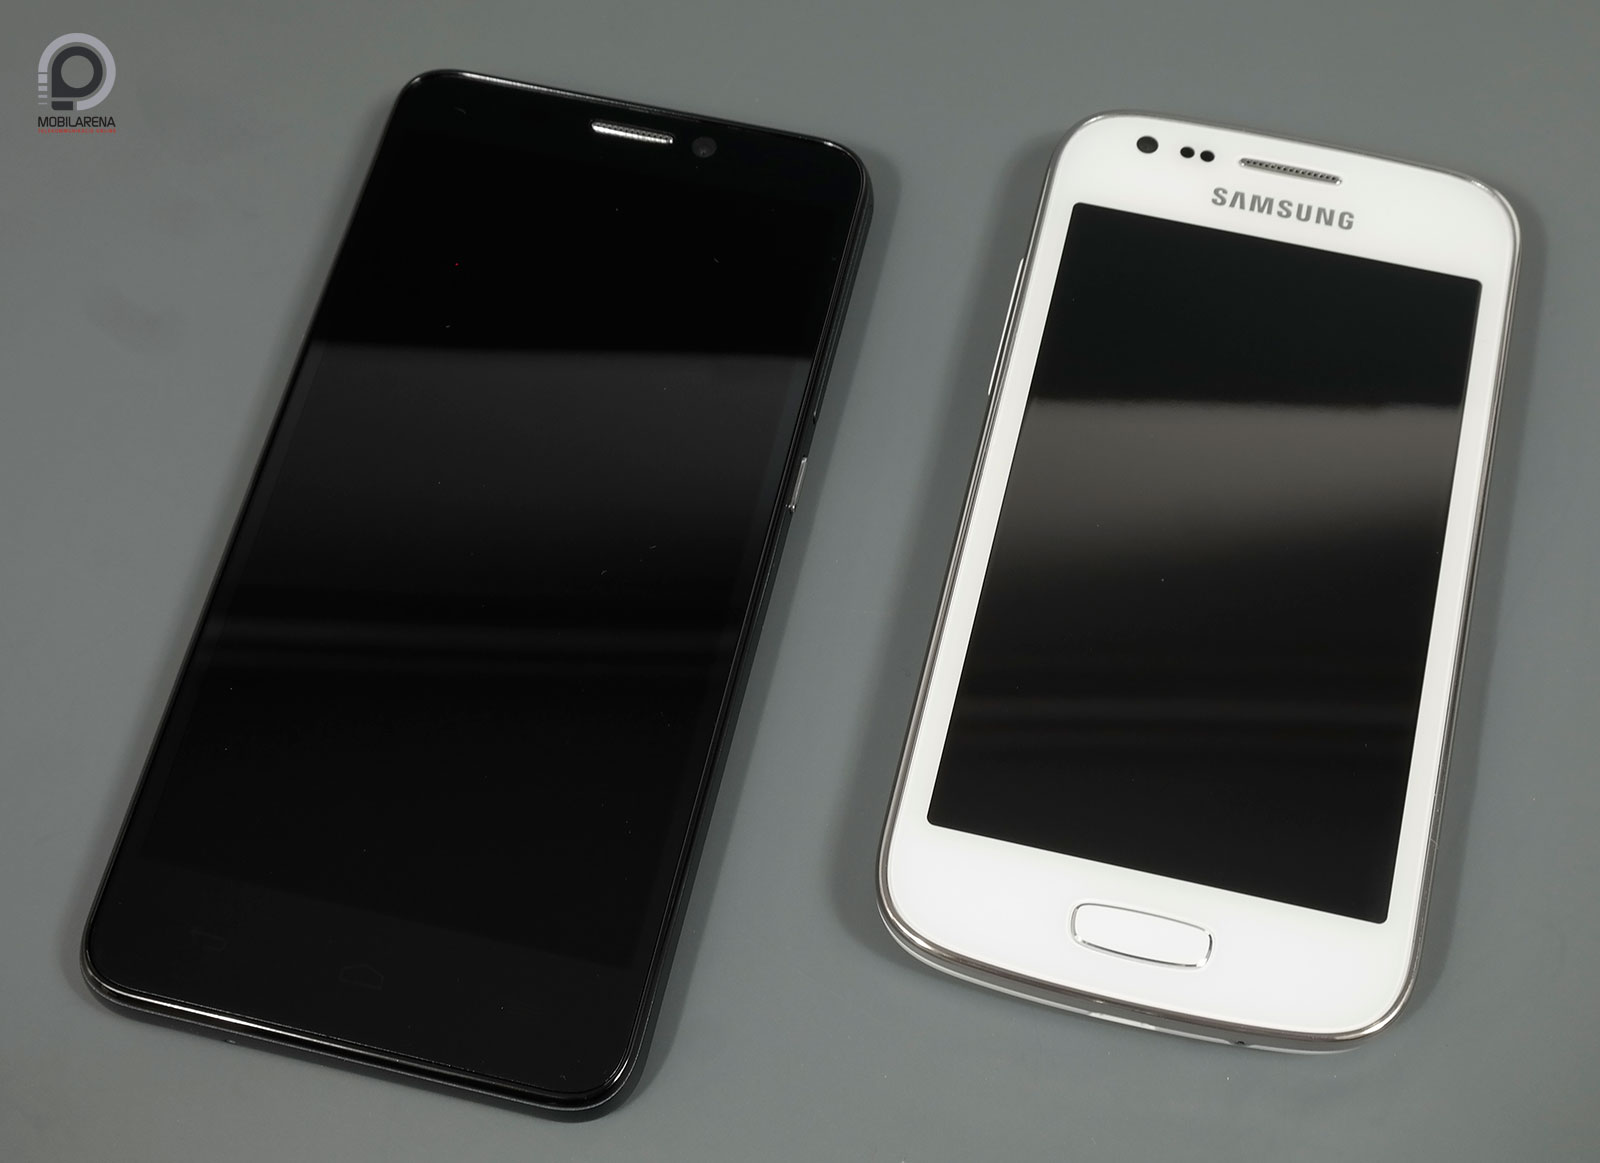 Samsung Galaxy Ace 3 - olcsó S-ág - Mobilarena Okostelefon teszt